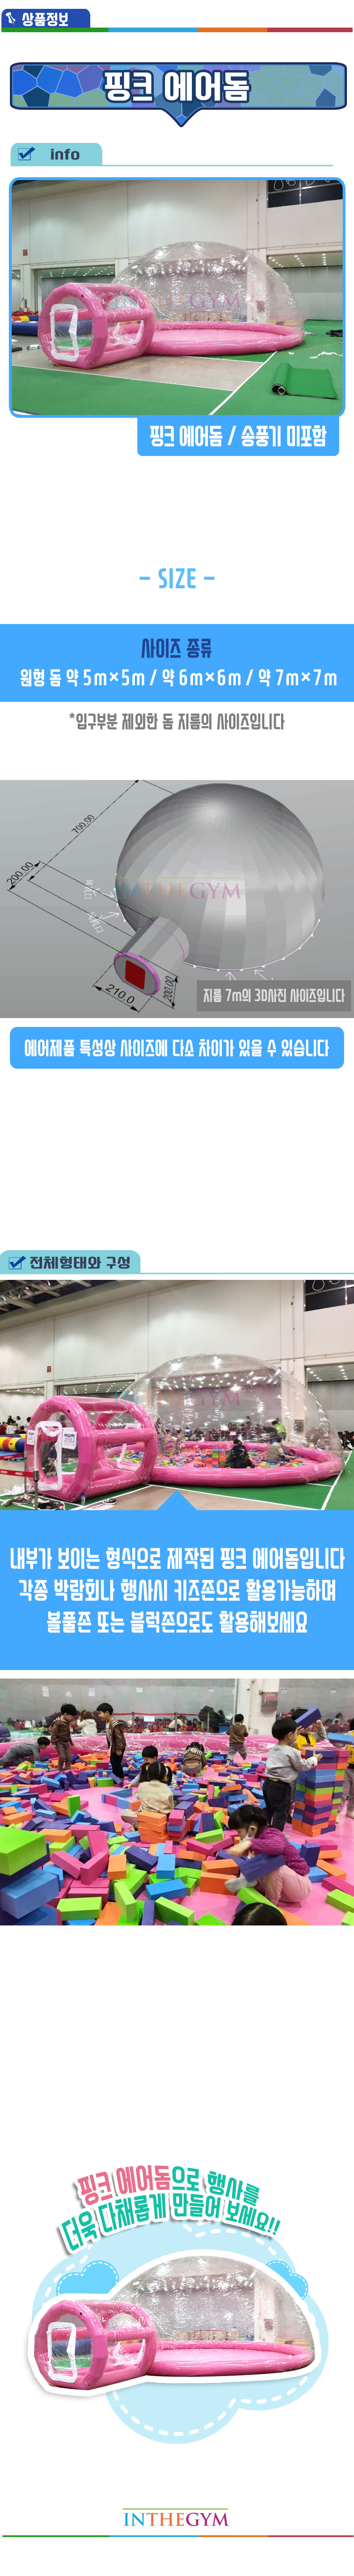 pink_air_dom_shop1_142821.jpg